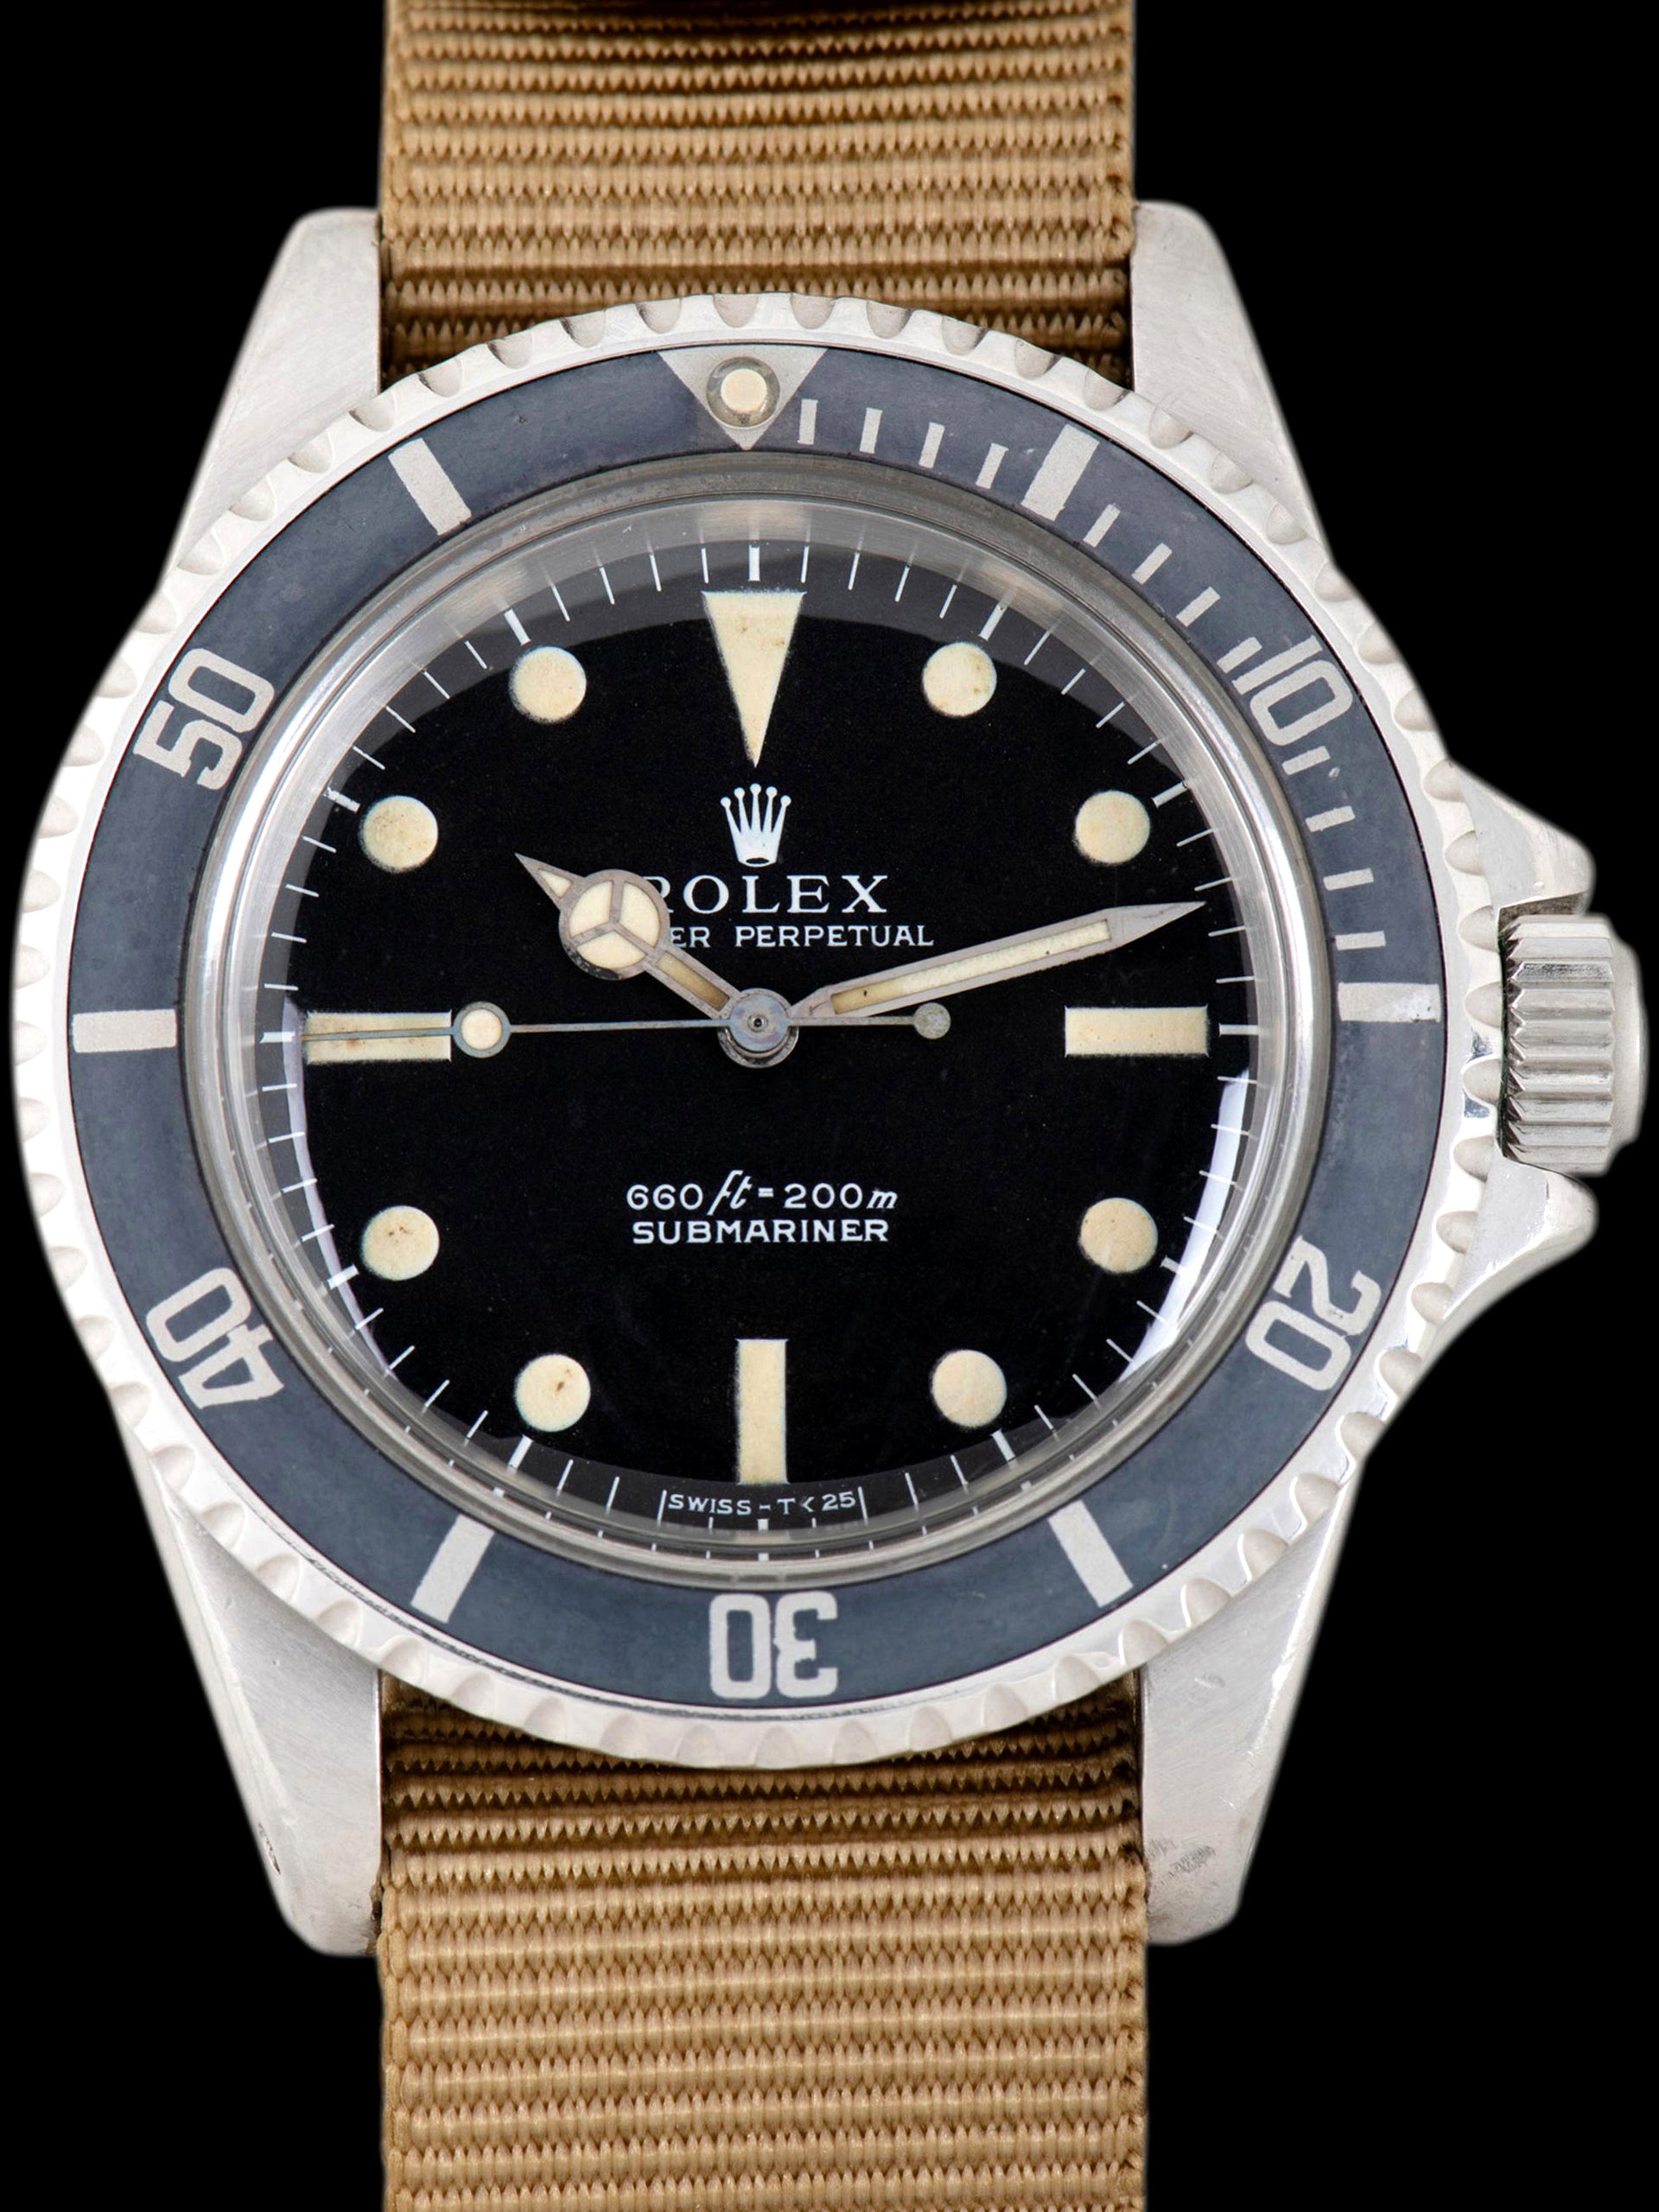 1969 Rolex Submariner (Ref. 5513) "Non-Serif" Dial